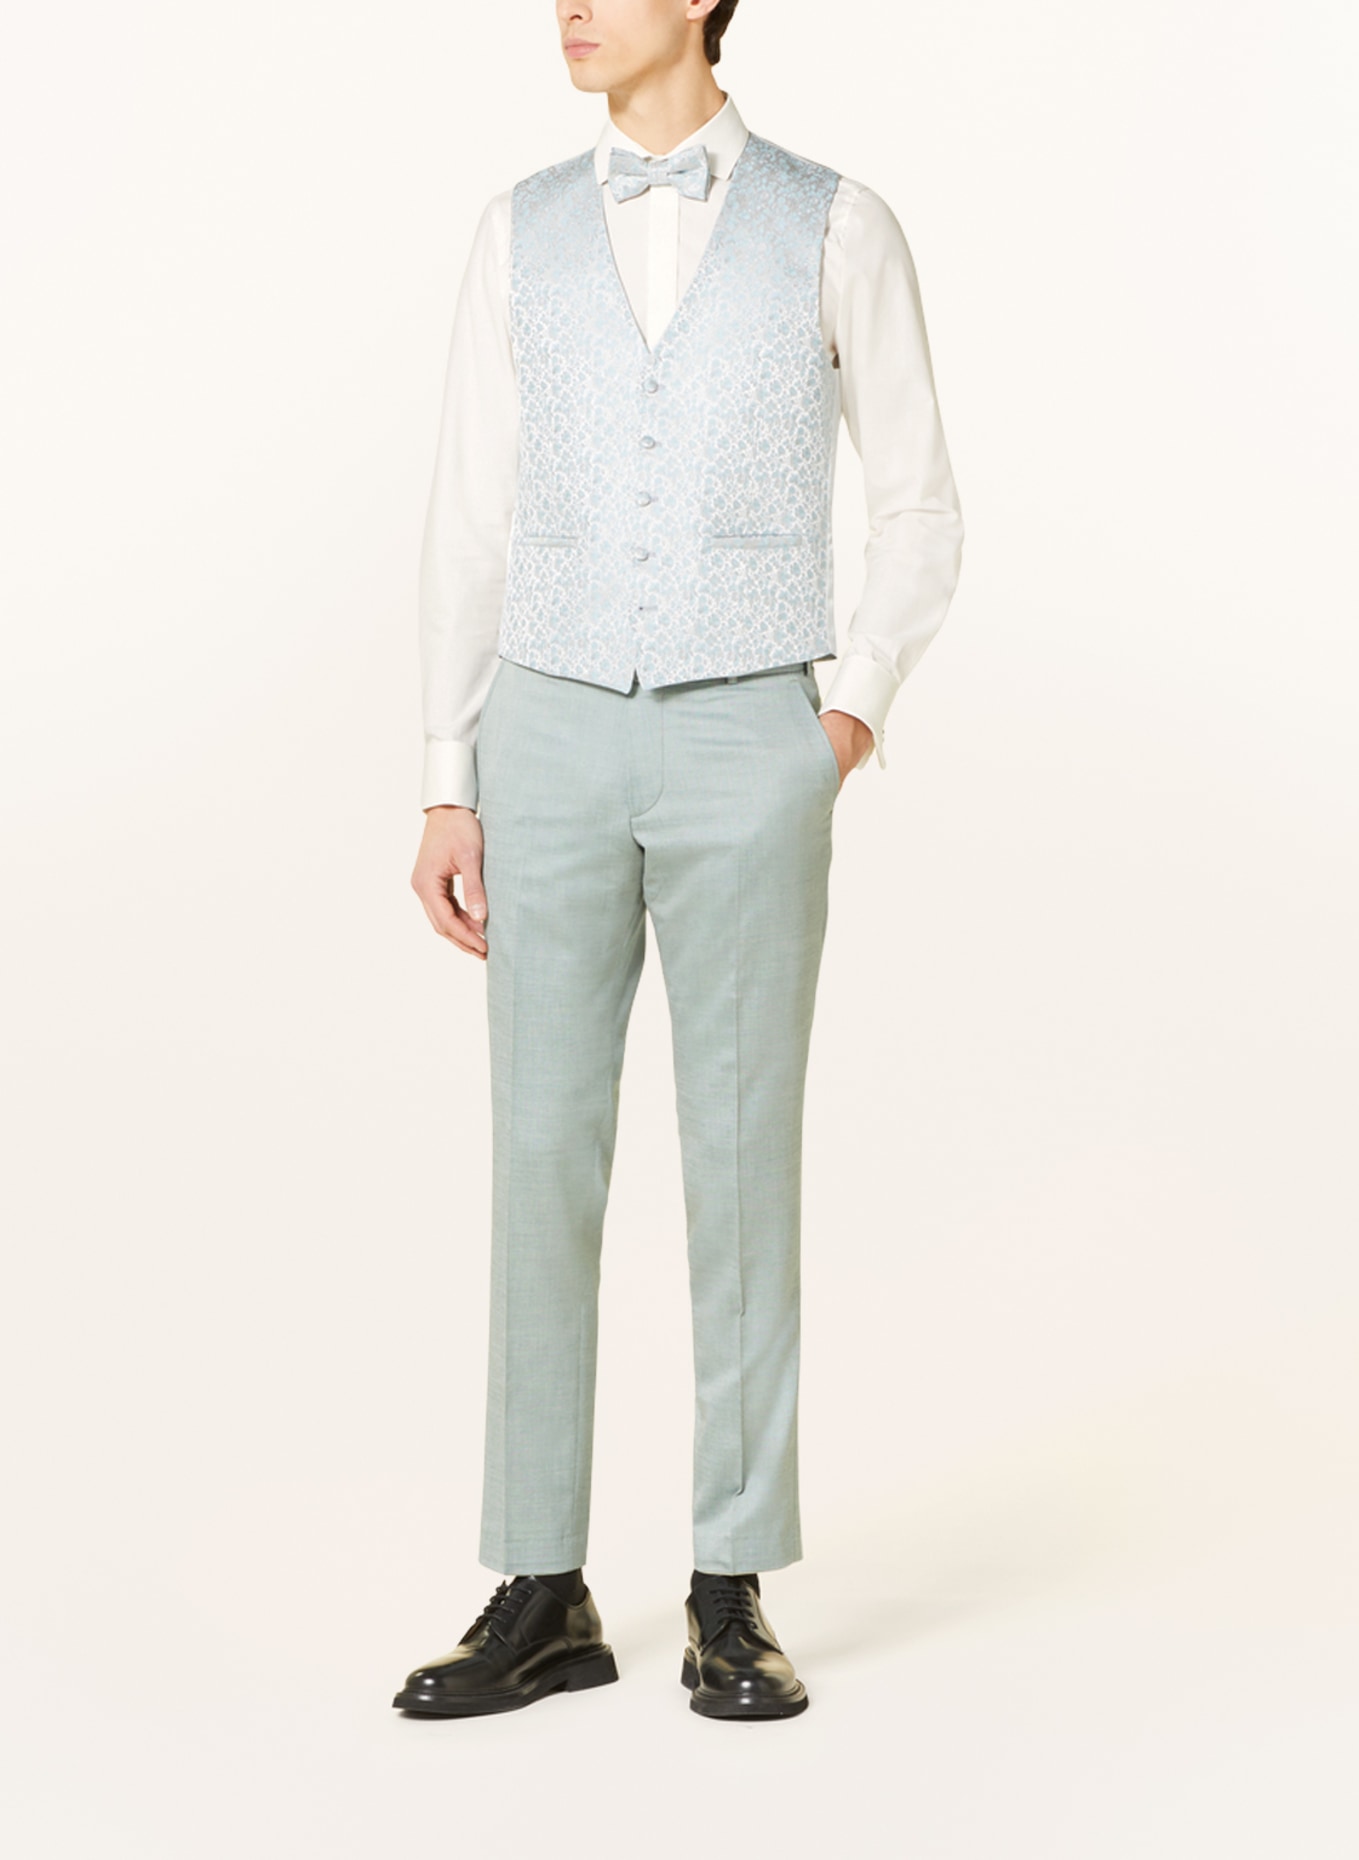 WILVORST Suit vest slim fit, Color: MINT (Image 3)